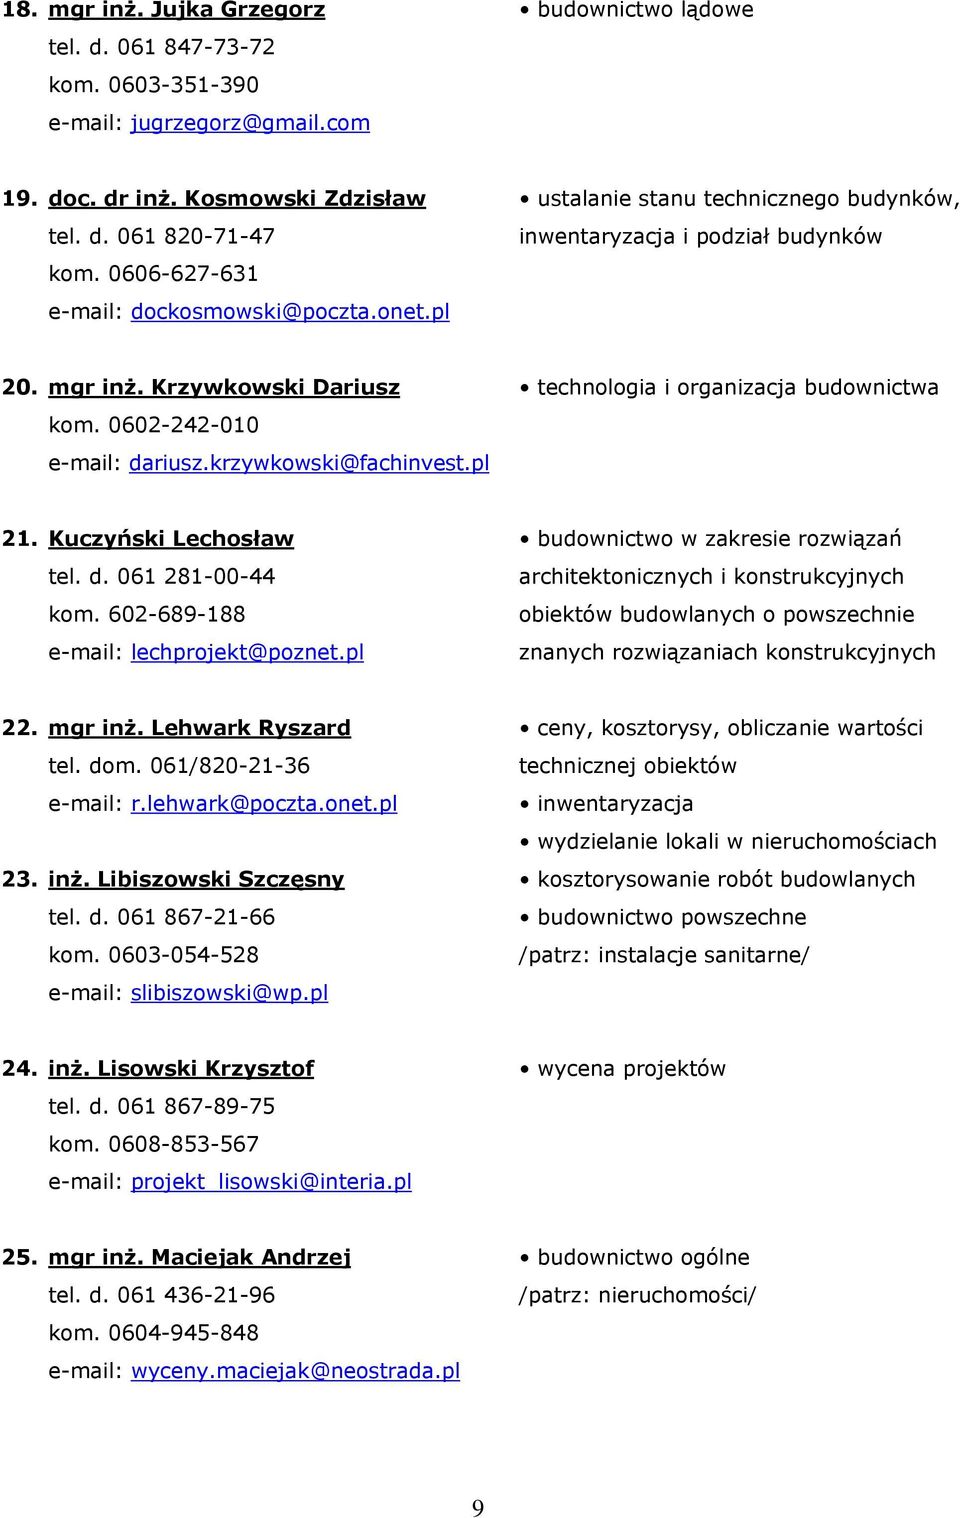 krzywkowski@fachinvest.pl technologia i organizacja budownictwa 21. Kuczyński Lechosław tel. d. 061 281-00-44 kom. 602-689-188 e-mail: lechprojekt@poznet.